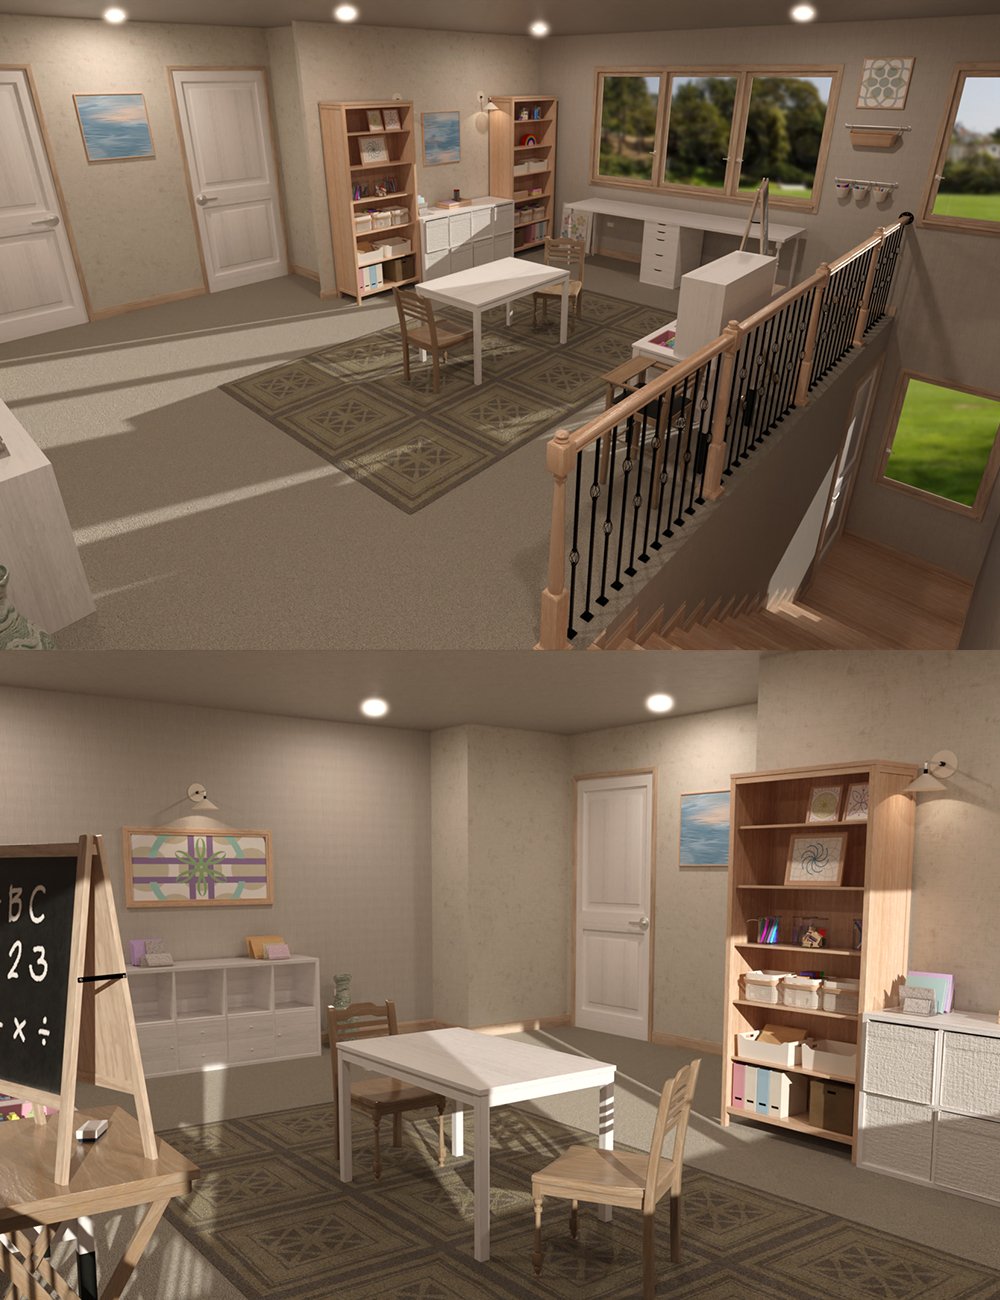 Home School Room by: bituka3d, 3D Models by Daz 3D